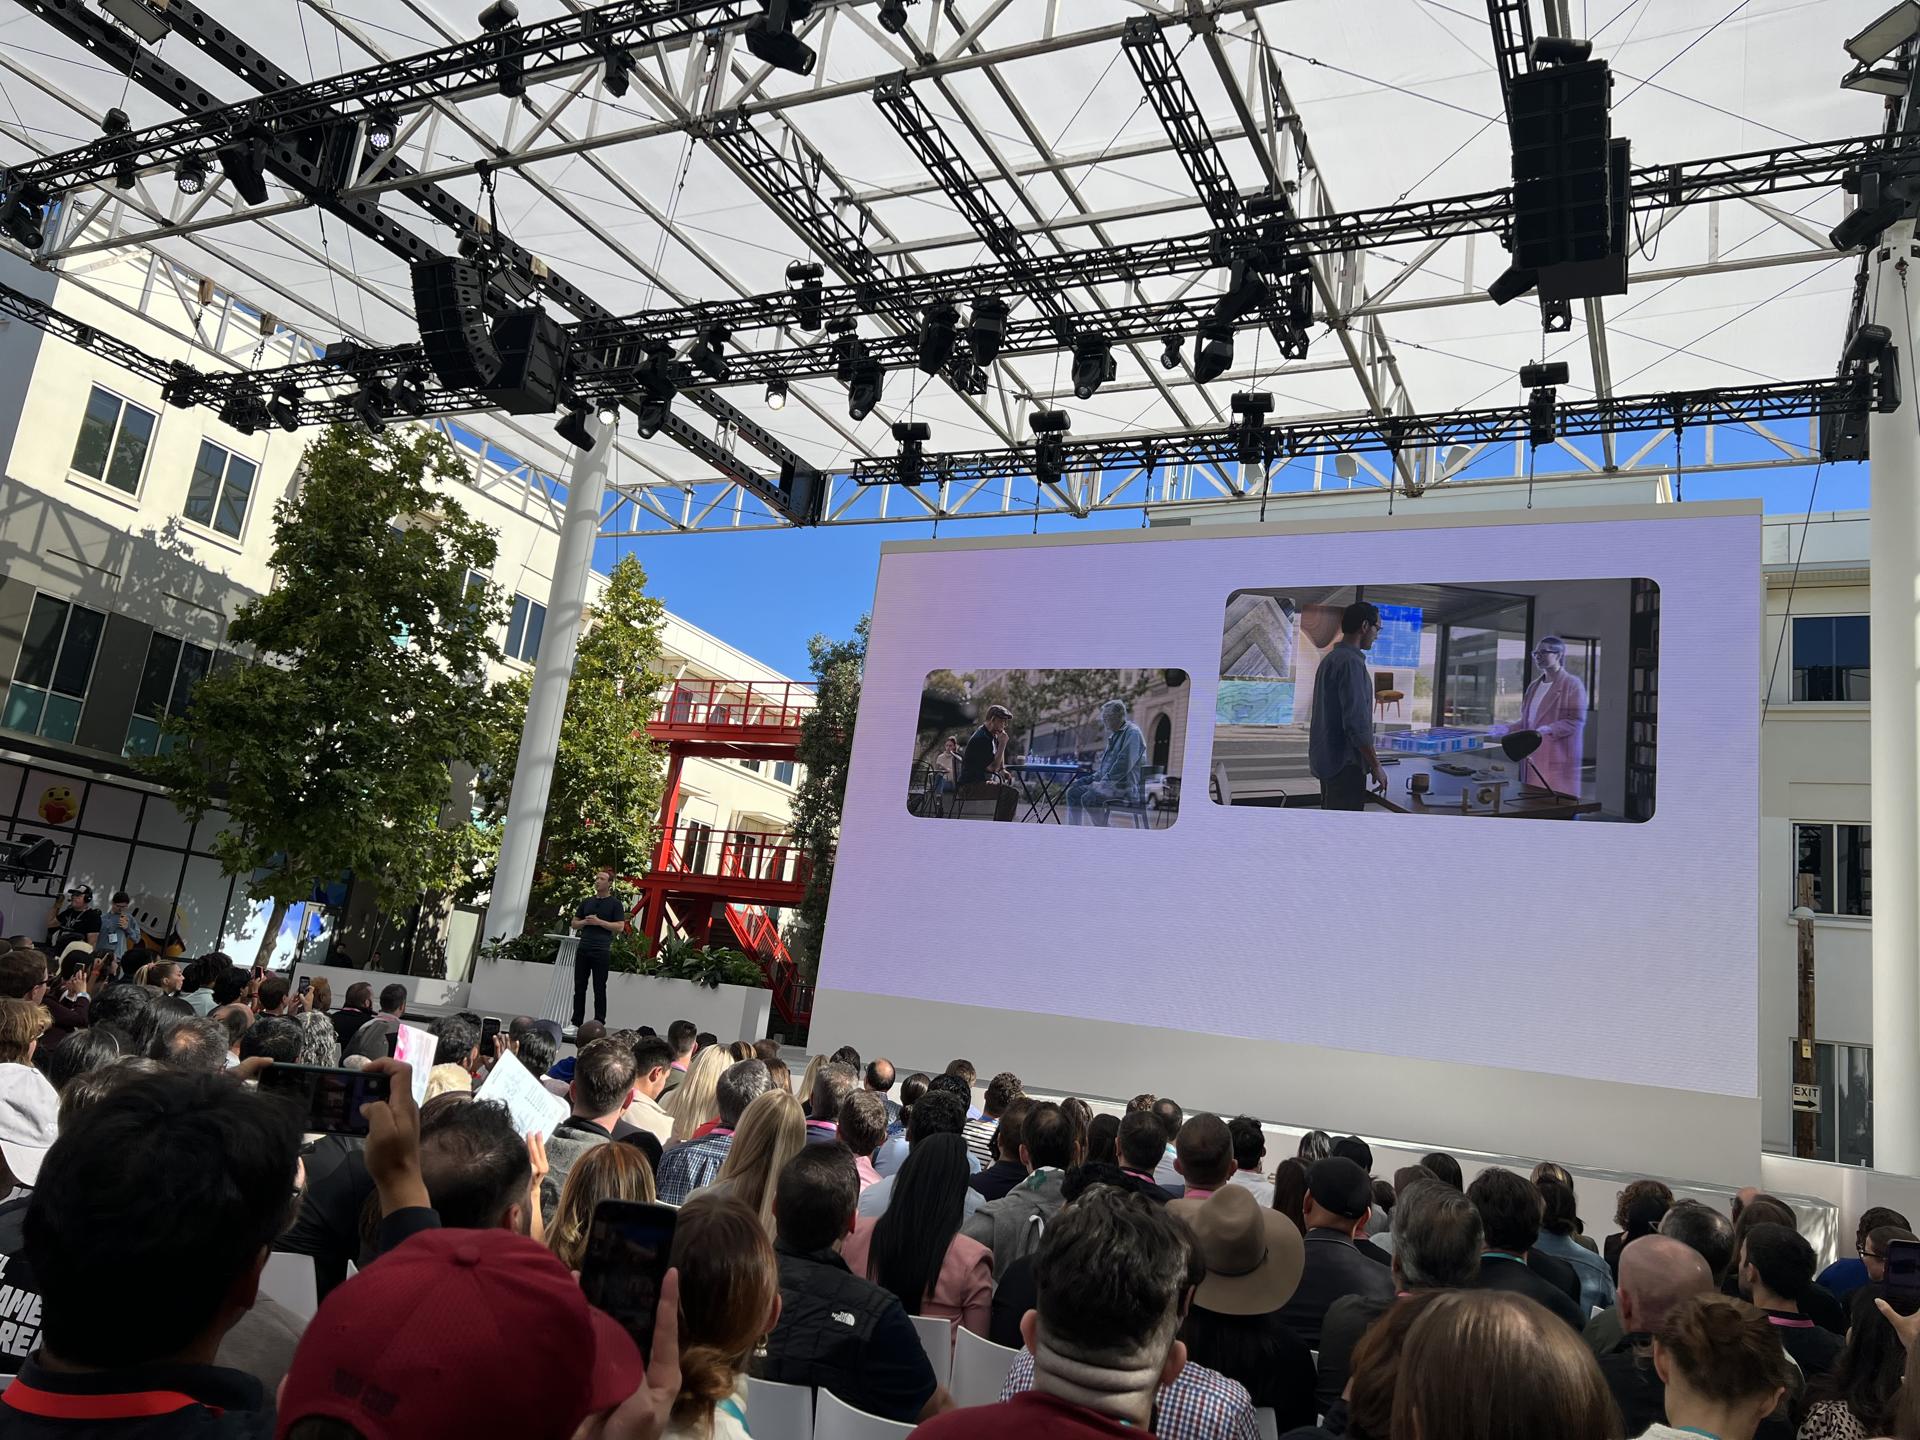 El director ejecutivo de Meta (matriz de Facebook, Instagram y WhatsApp), Mark Zuckerberg, habla durante el evento anual Meta Connect hoy en Menlo Park, California (EE. UU). EFE/Sarah Yáñez-Richards